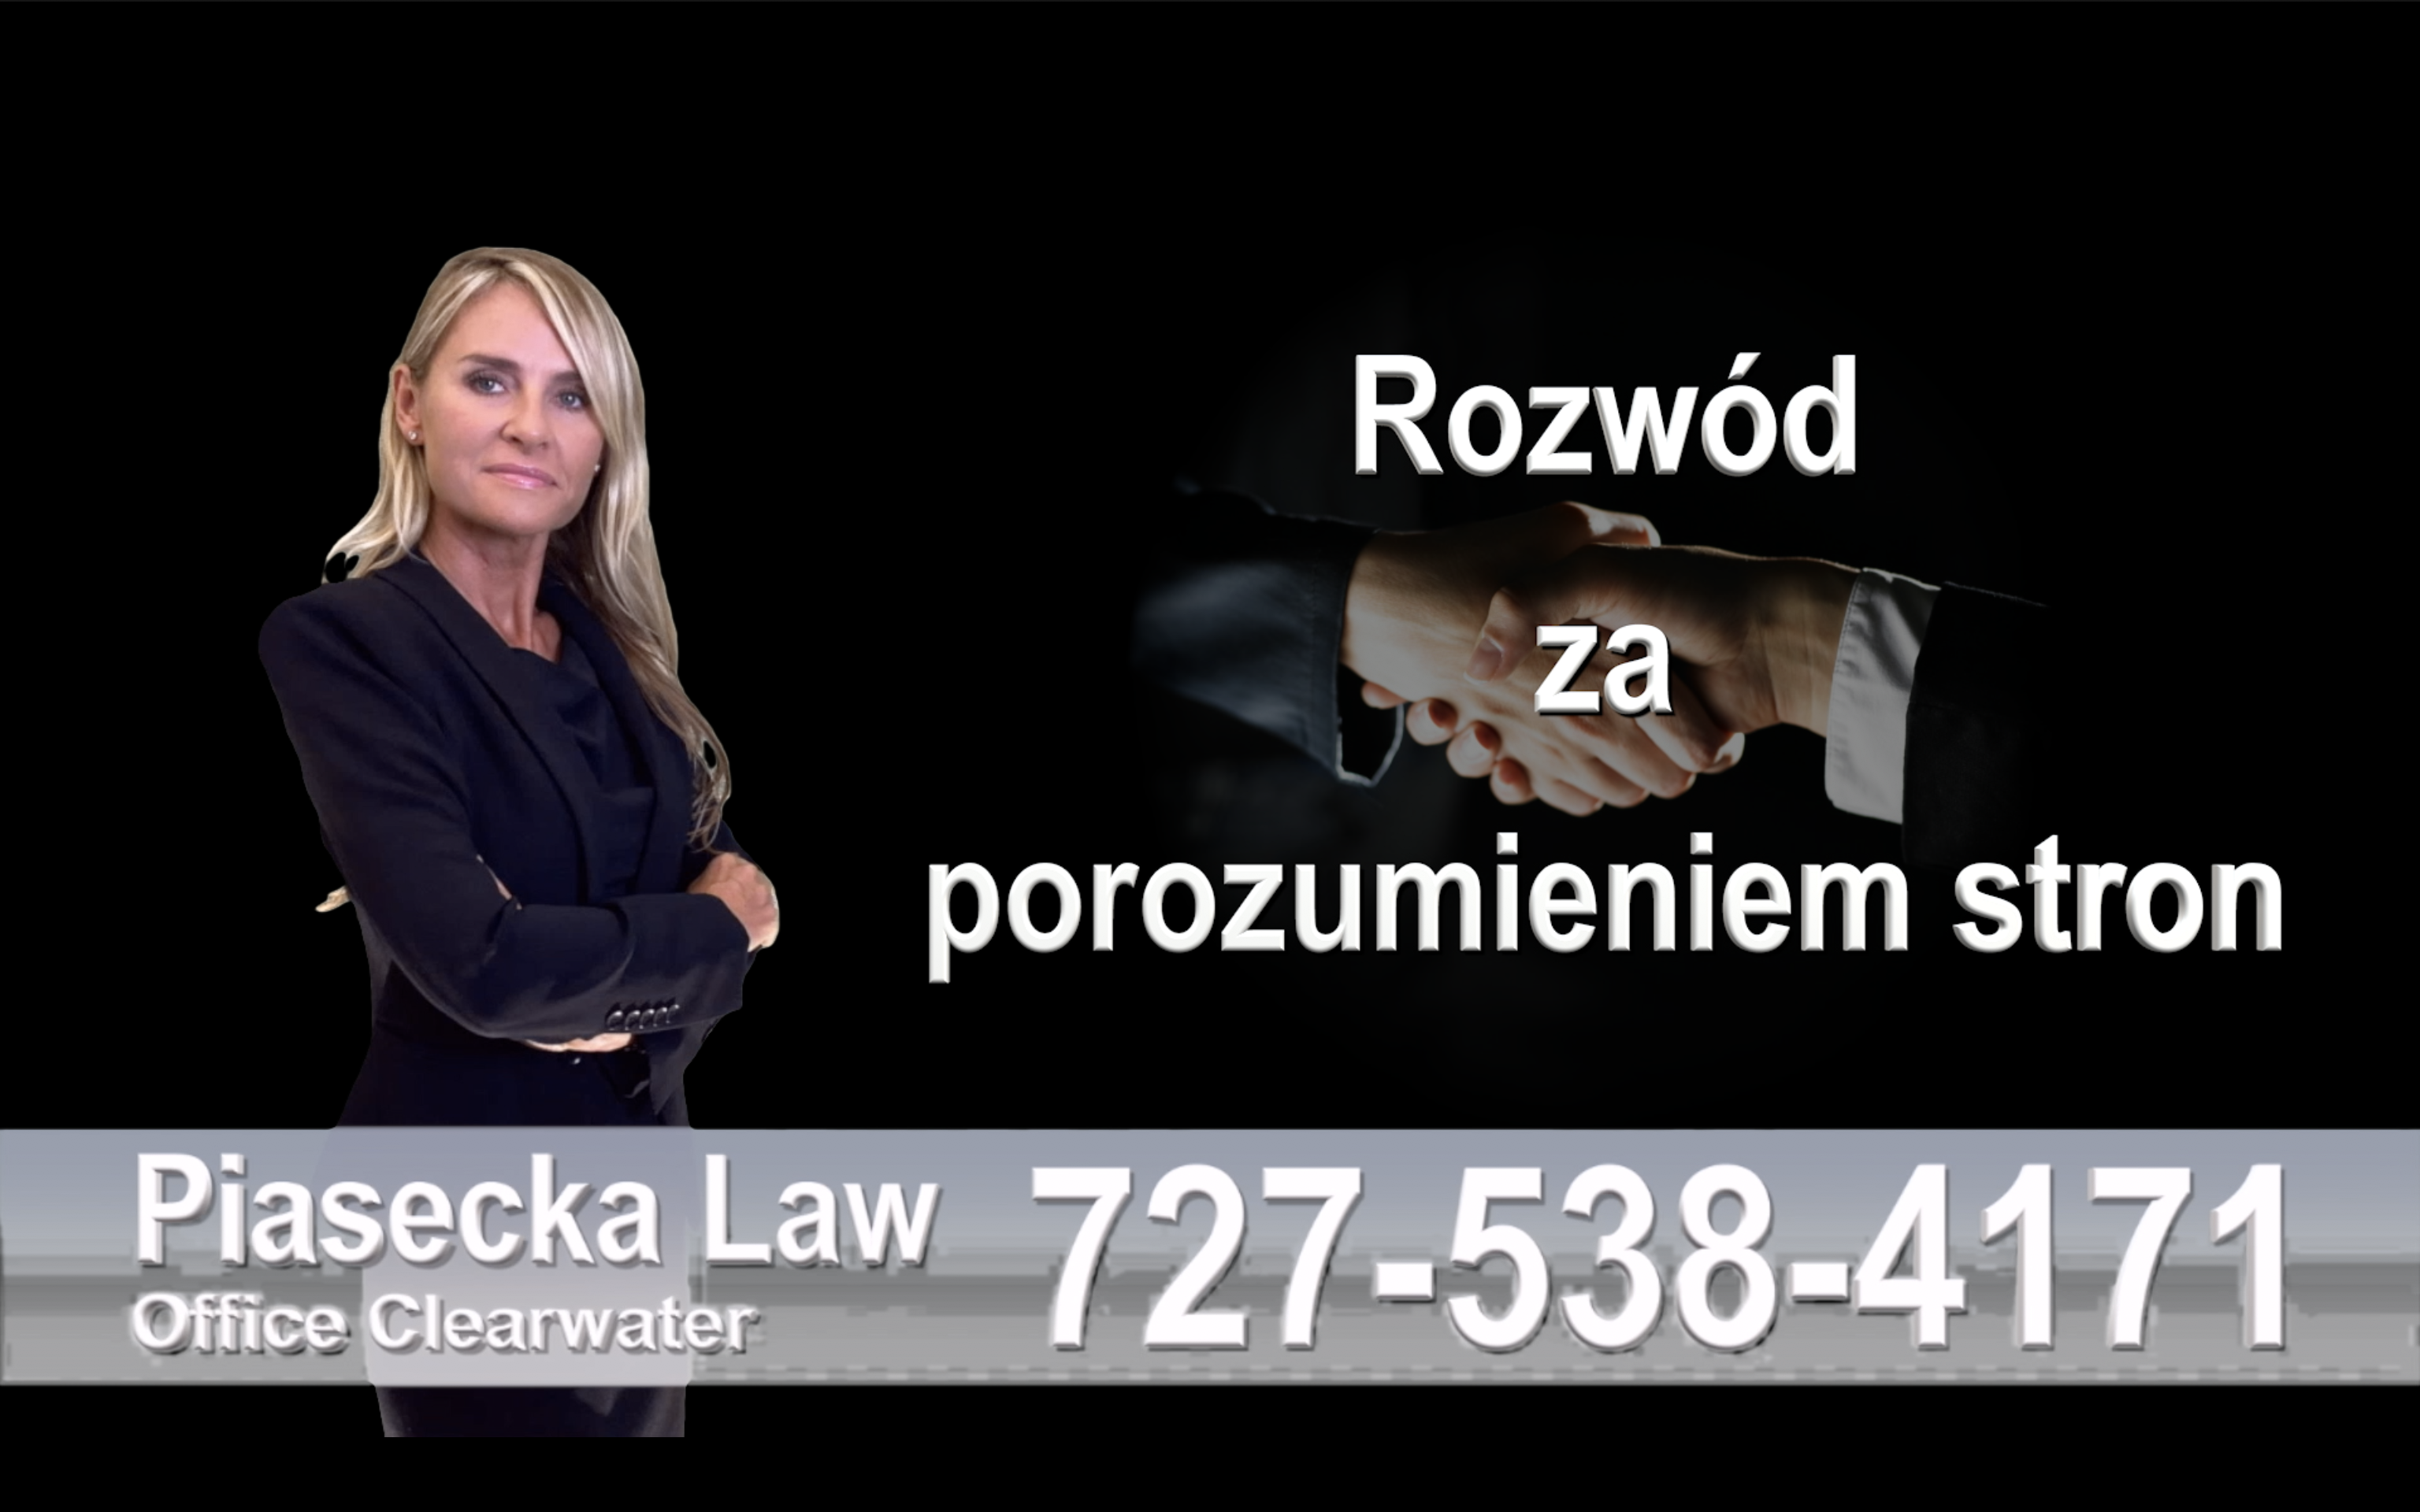 Largo Polski prawnik clearwater rozwód za porozumieniem stron, collaborative divorce